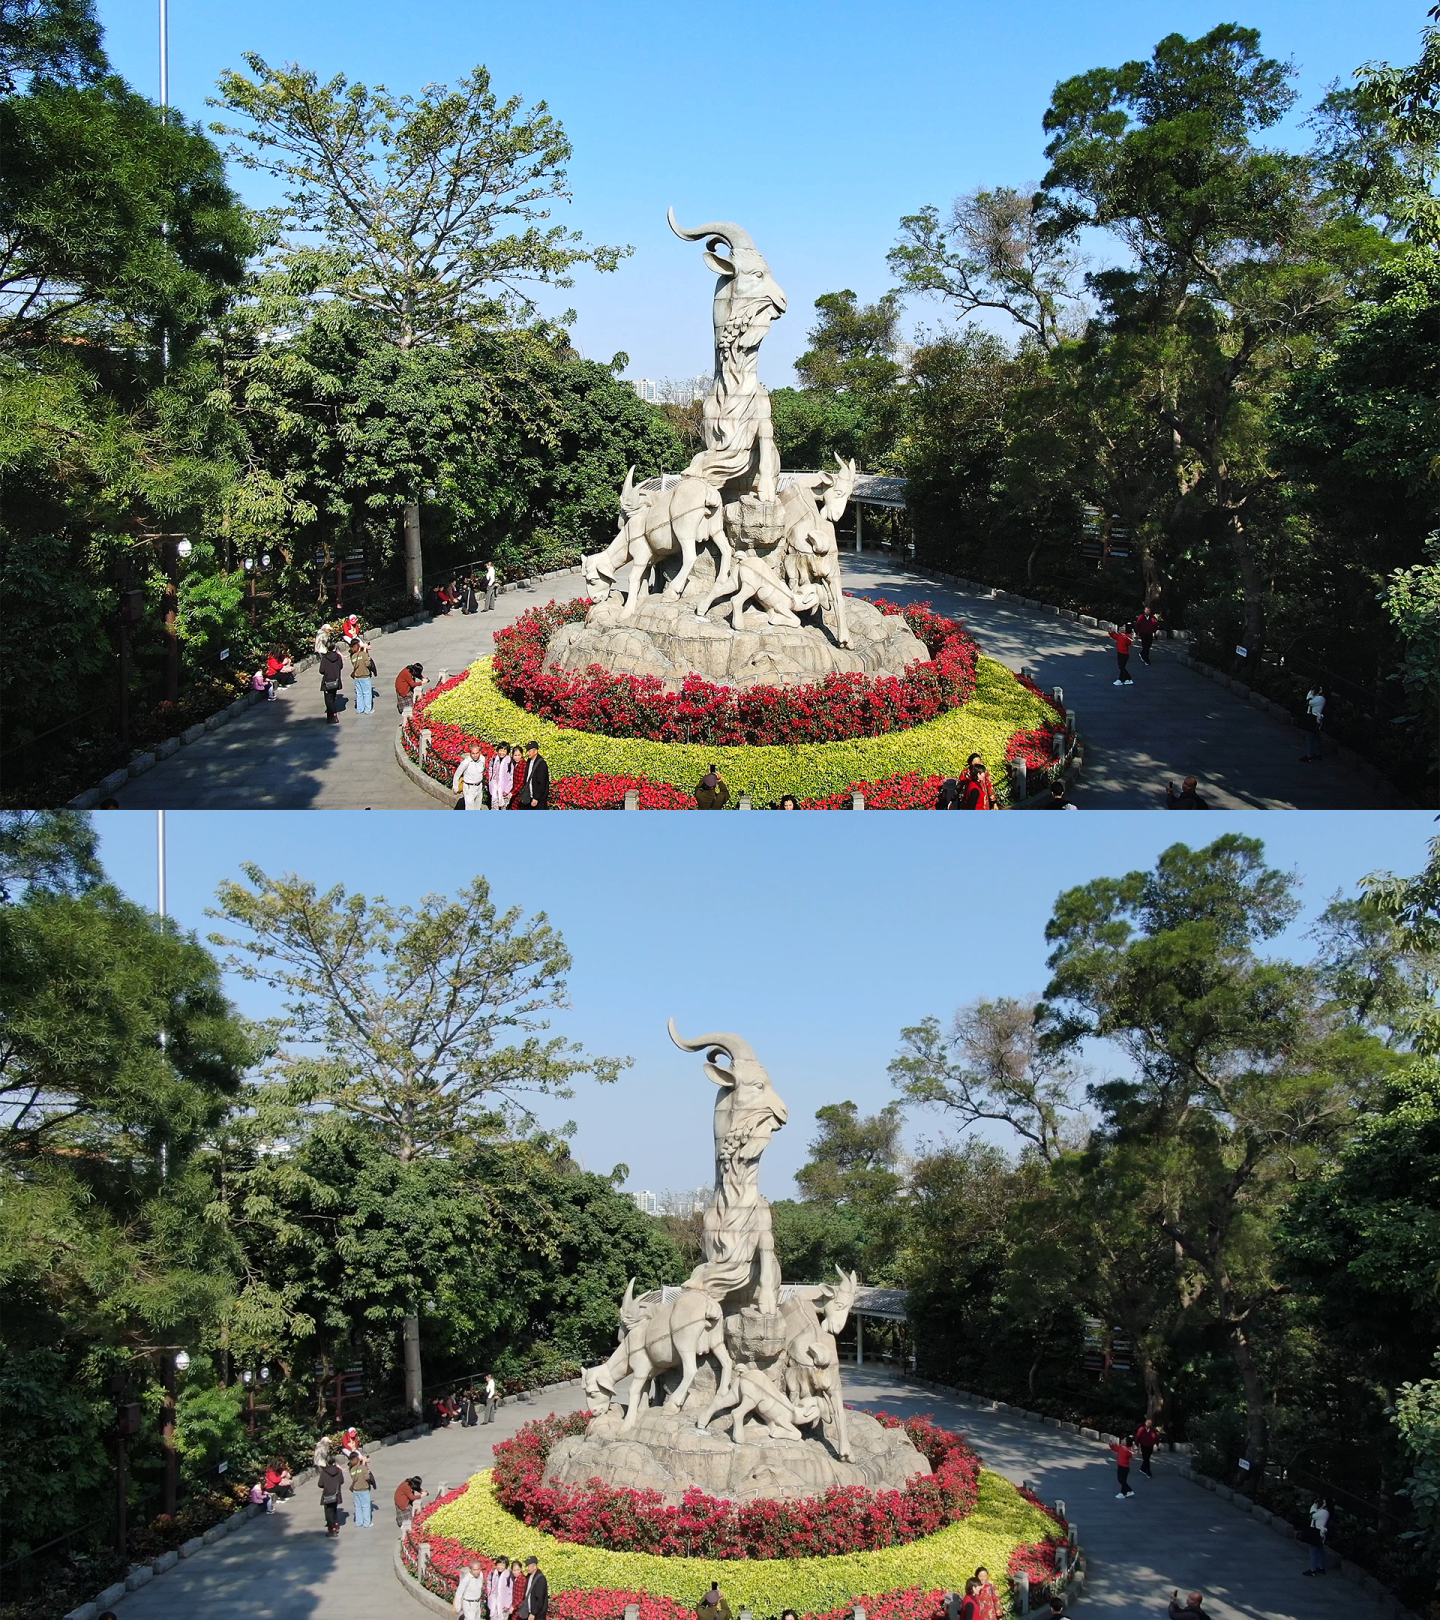 广州越秀公园越秀山五羊雕塑五羊石像航拍